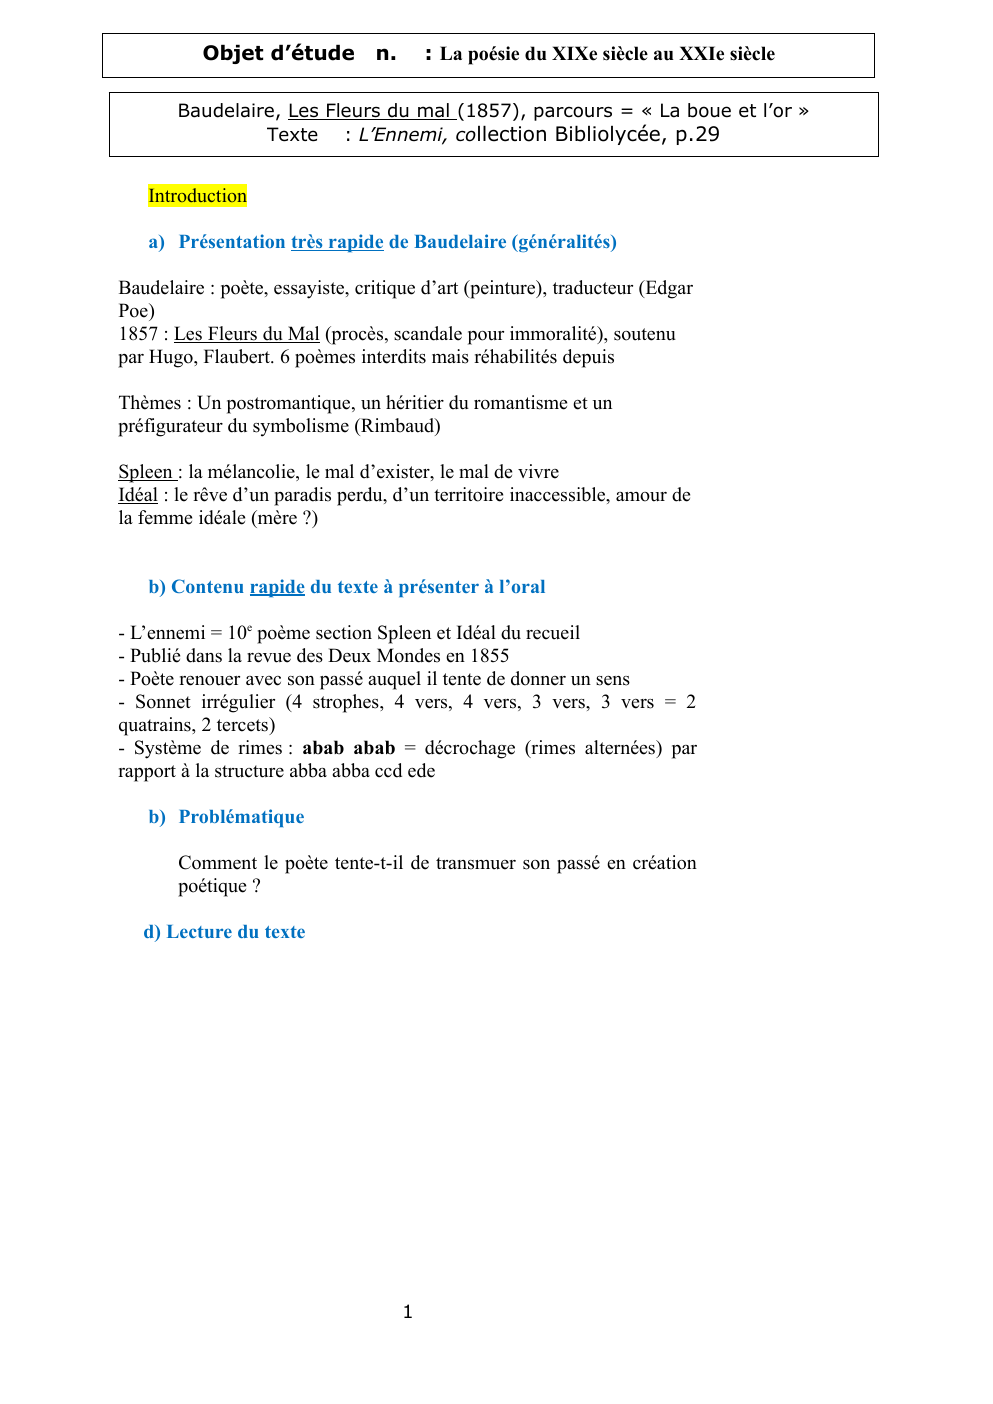 Prévisualisation du document Baudelaire, L'Ennemi - analyse linéaire